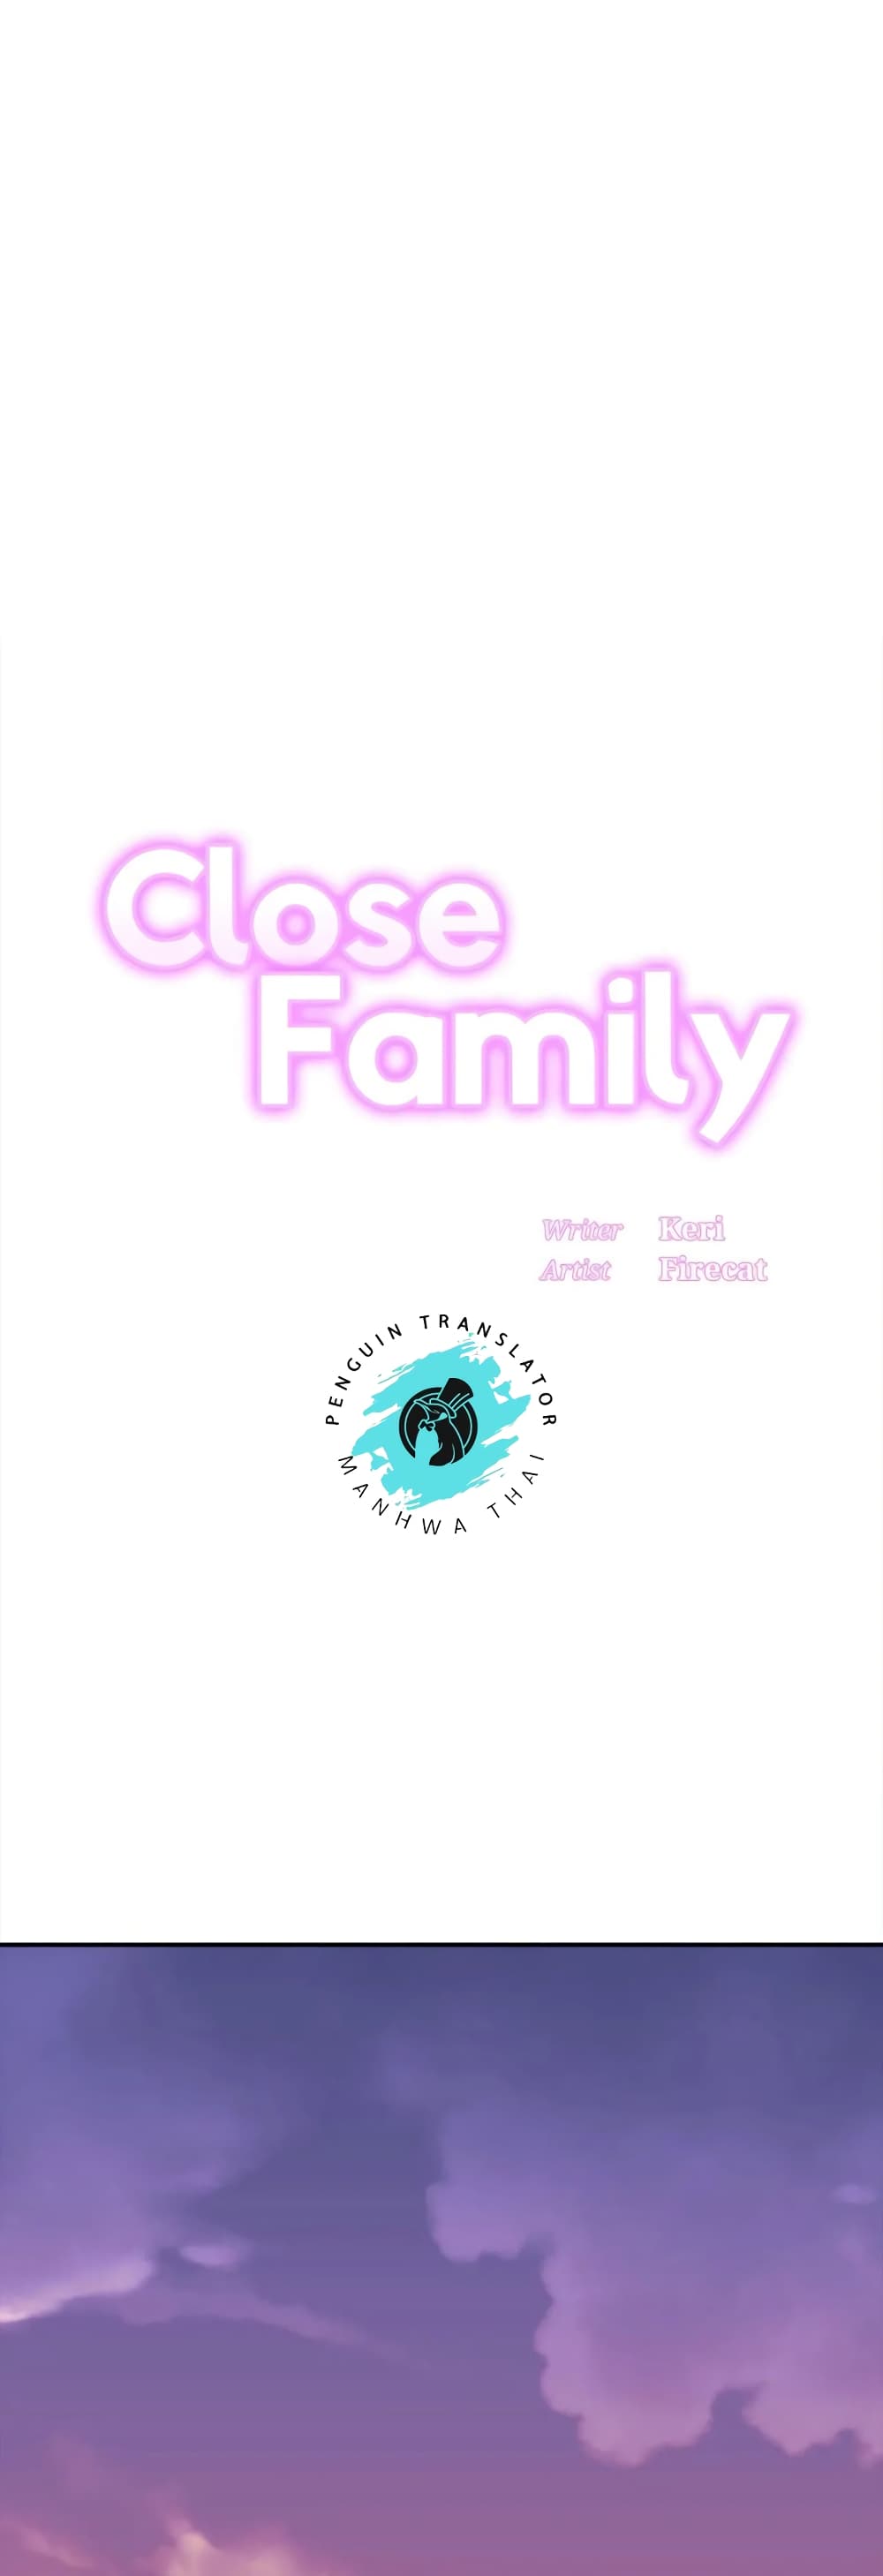 Close Family01